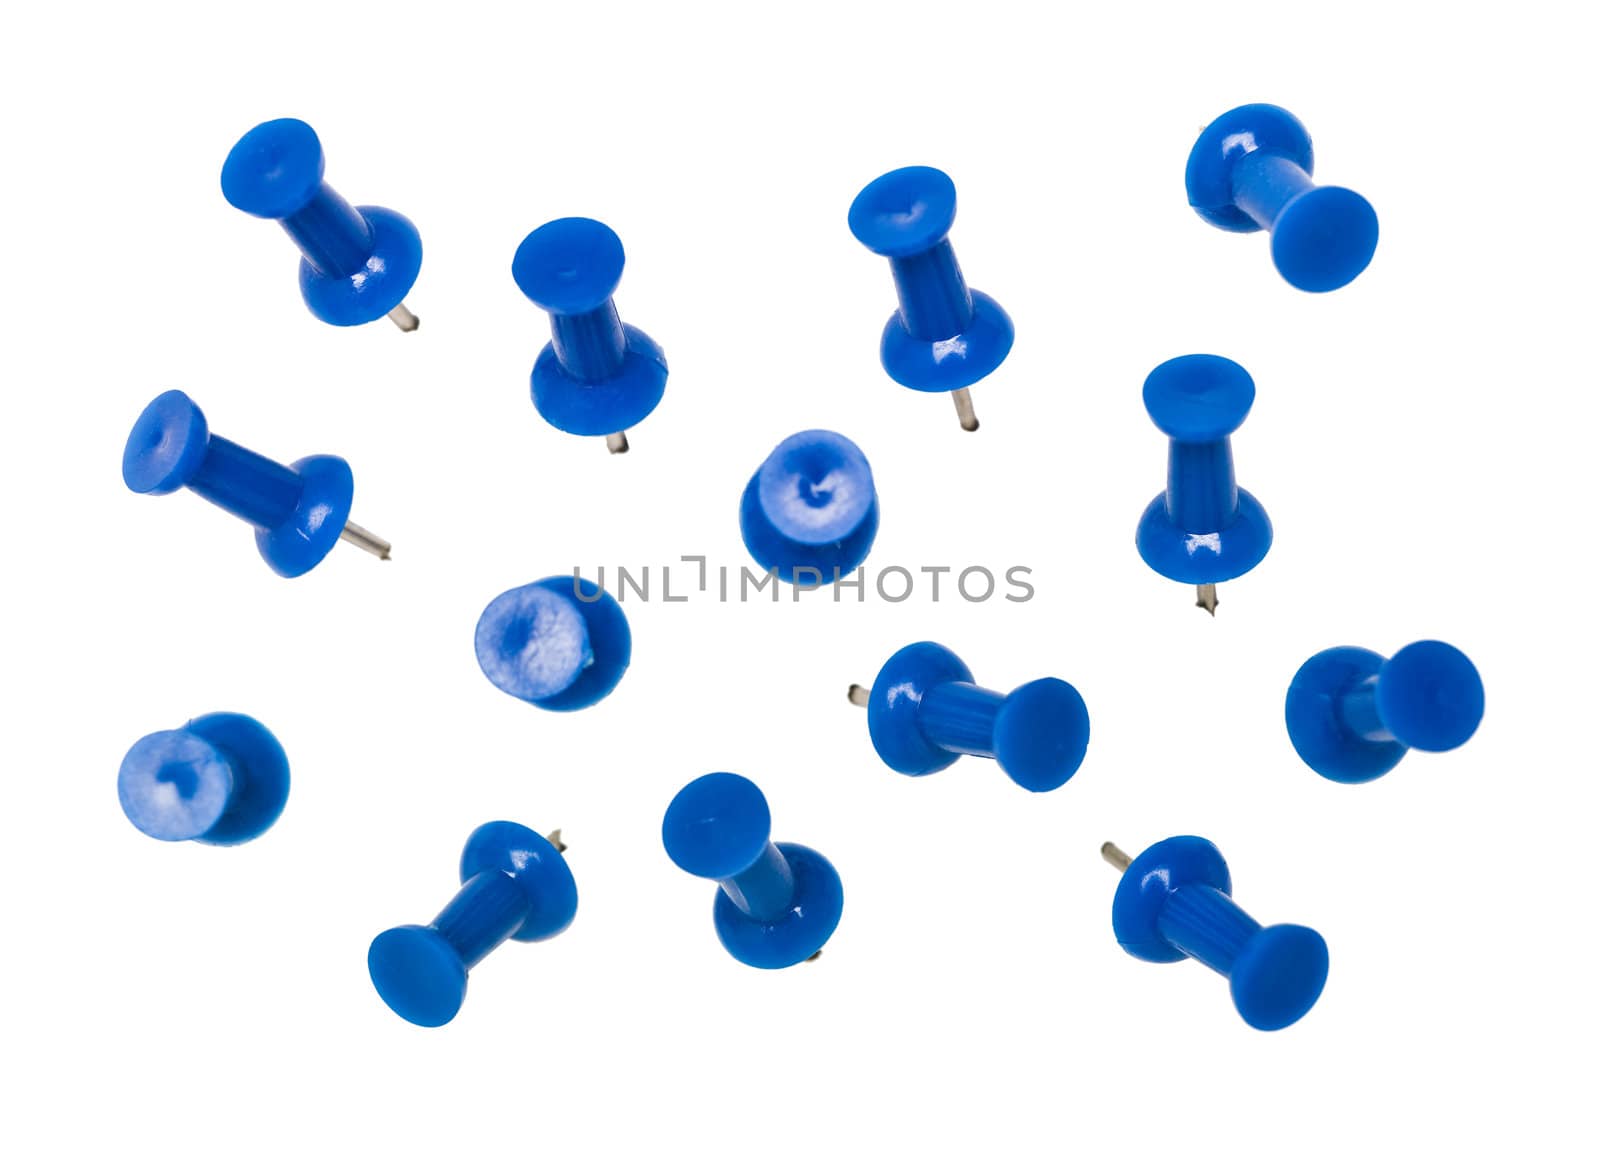 Blue Pushpins isolated on white background